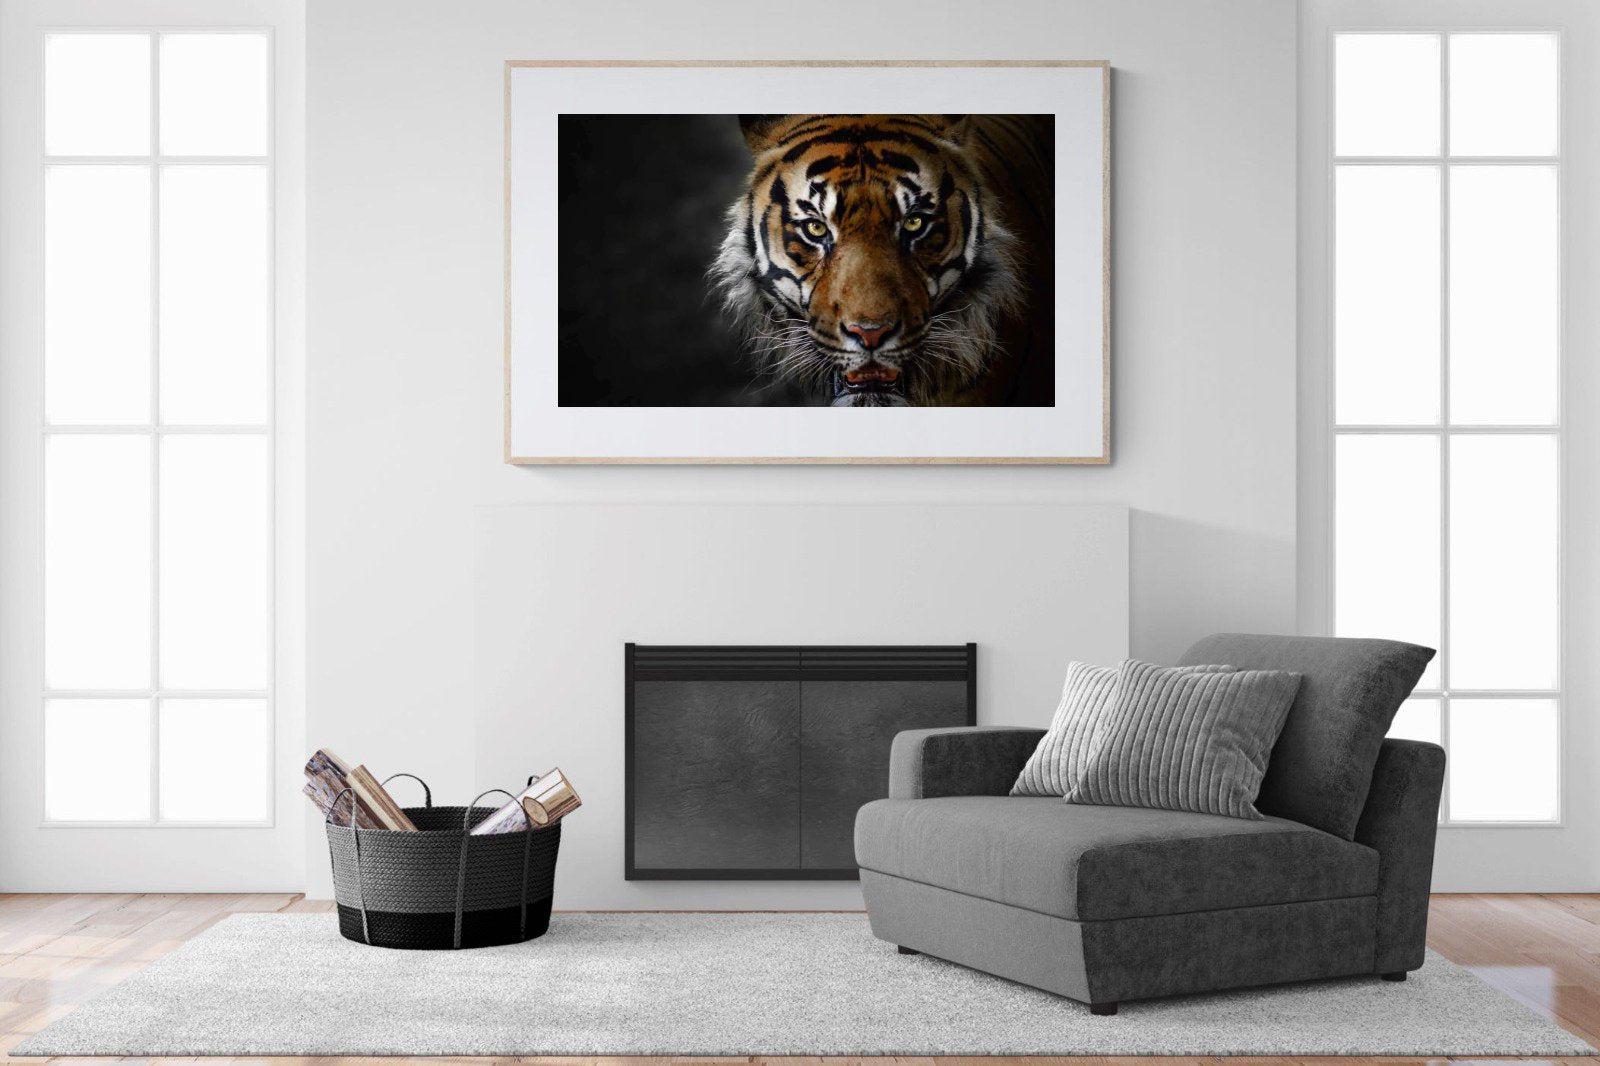 Tiger-Wall_Art-150 x 100cm-Framed Print-Wood-Pixalot